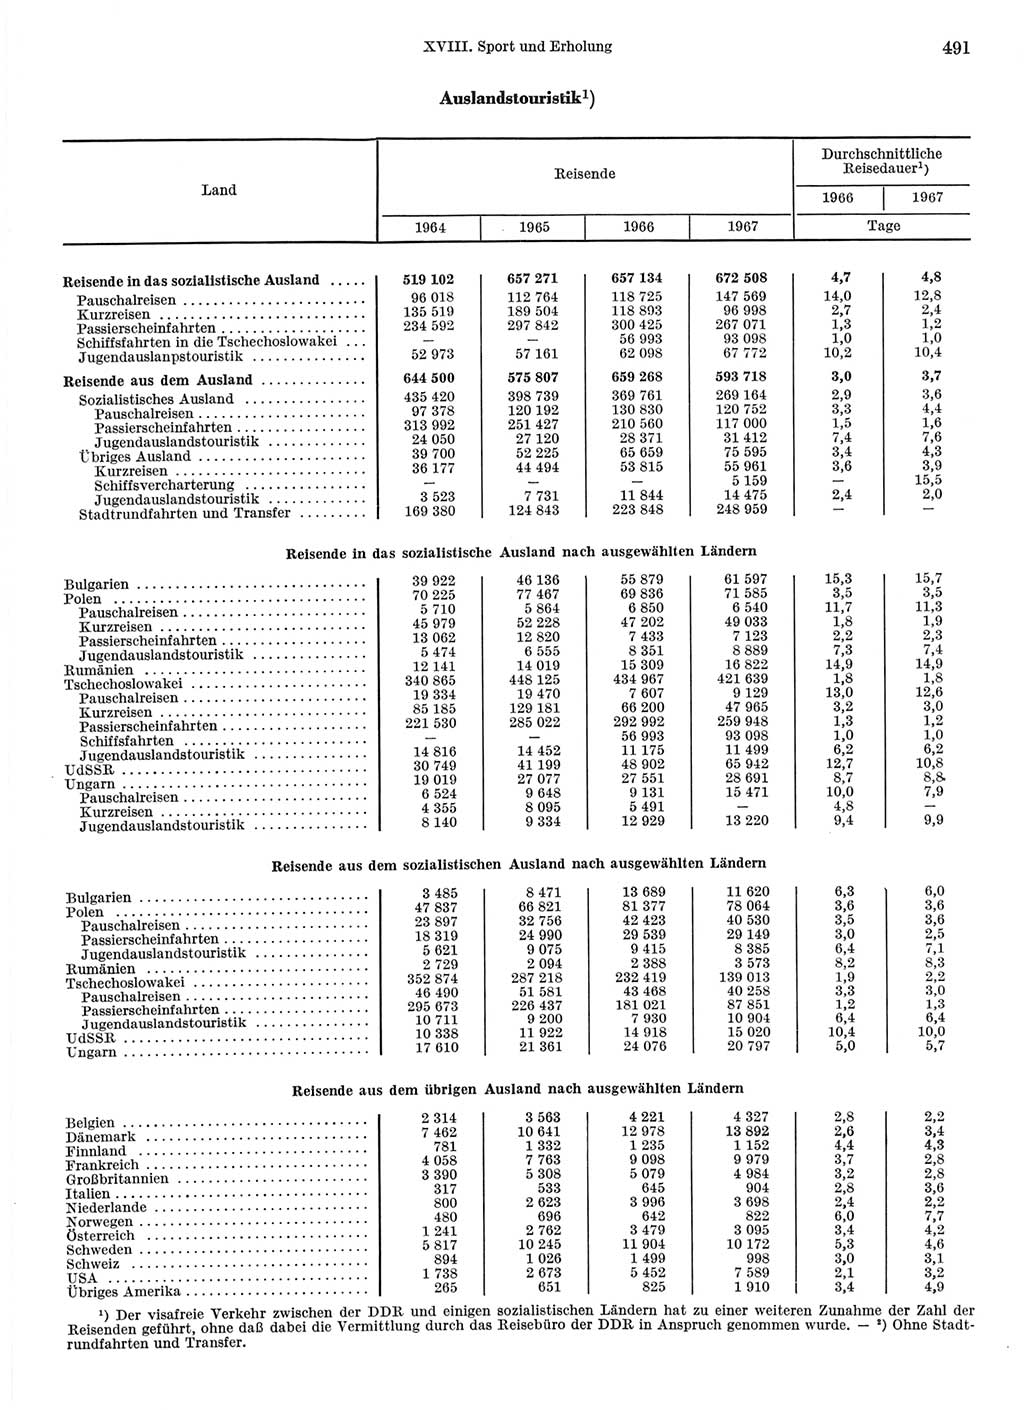 Statistisches Jahrbuch der Deutschen Demokratischen Republik (DDR) 1968, Seite 491 (Stat. Jb. DDR 1968, S. 491)